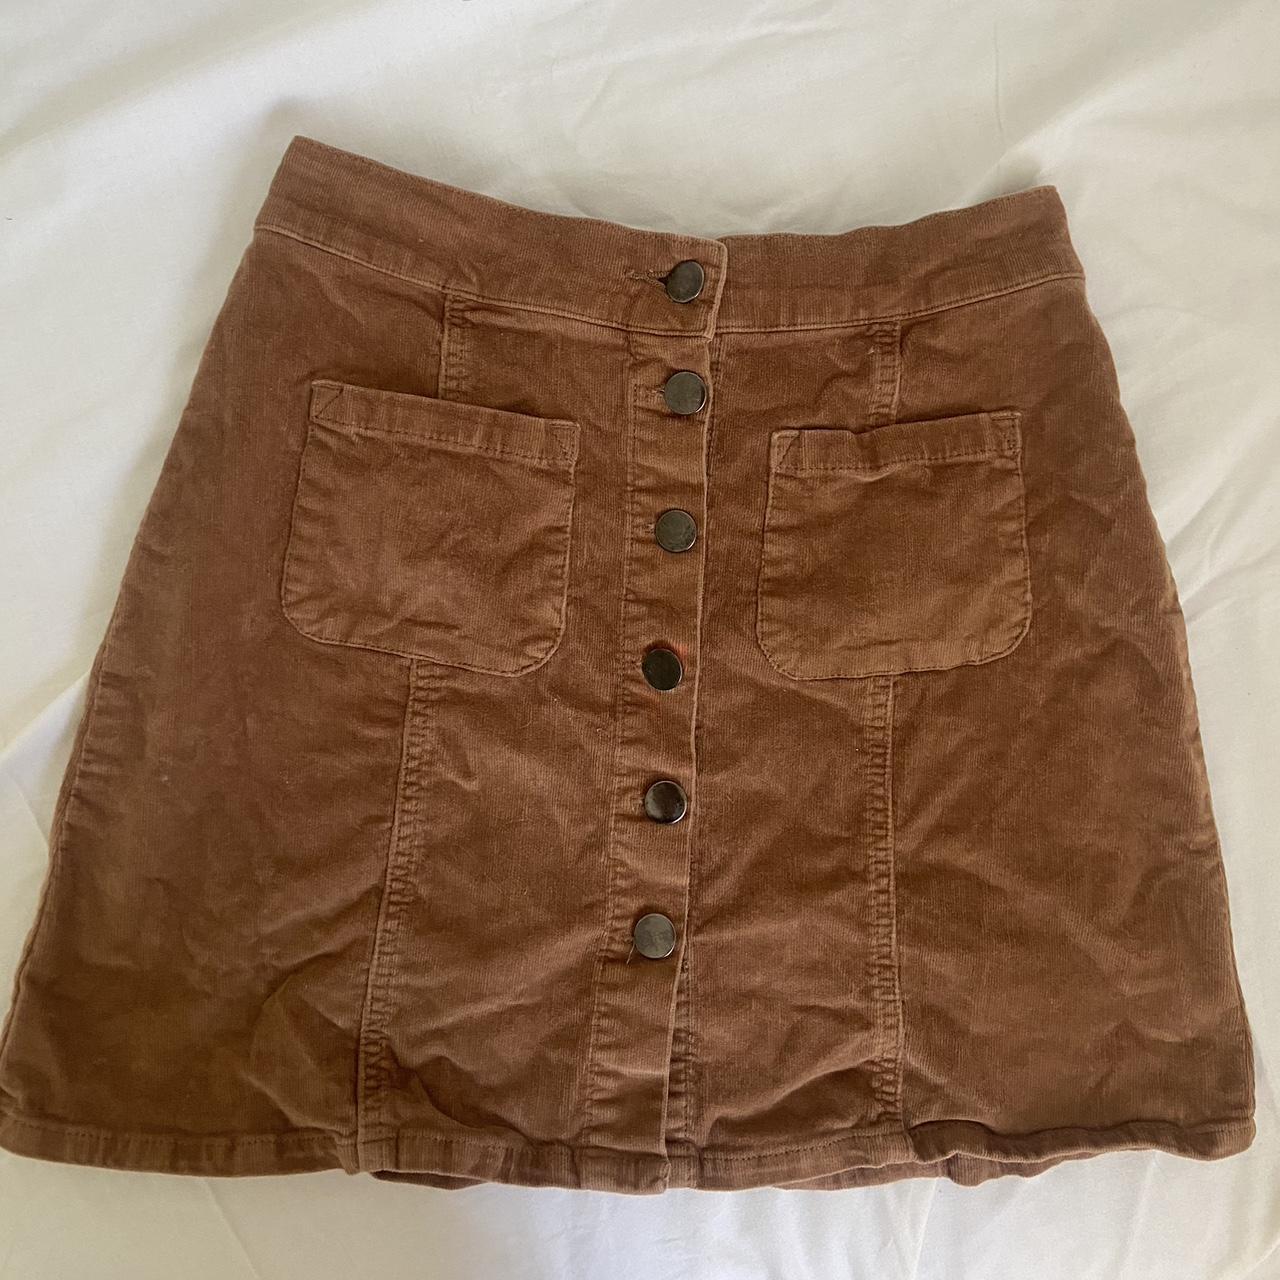 Ghanda brown button up mini skirt - size 6 -... - Depop